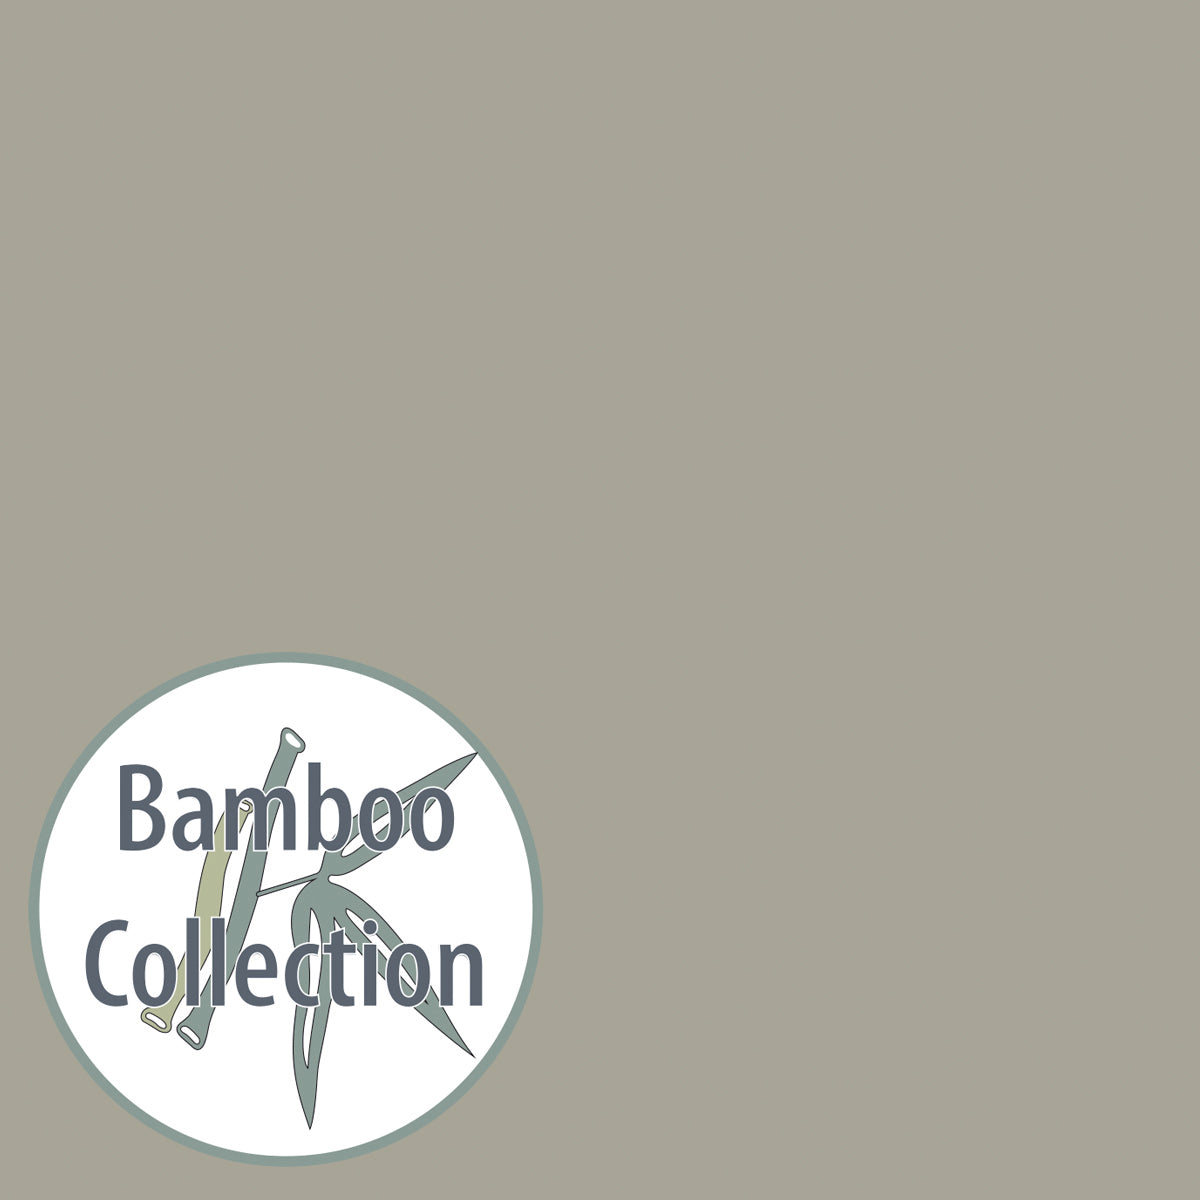 Produktbild: Theraline - Bezug - my7 Bamboo Collection von Theraline im Onlineshop von dasMikruli - Dein Shop für Baby Erstausstattung